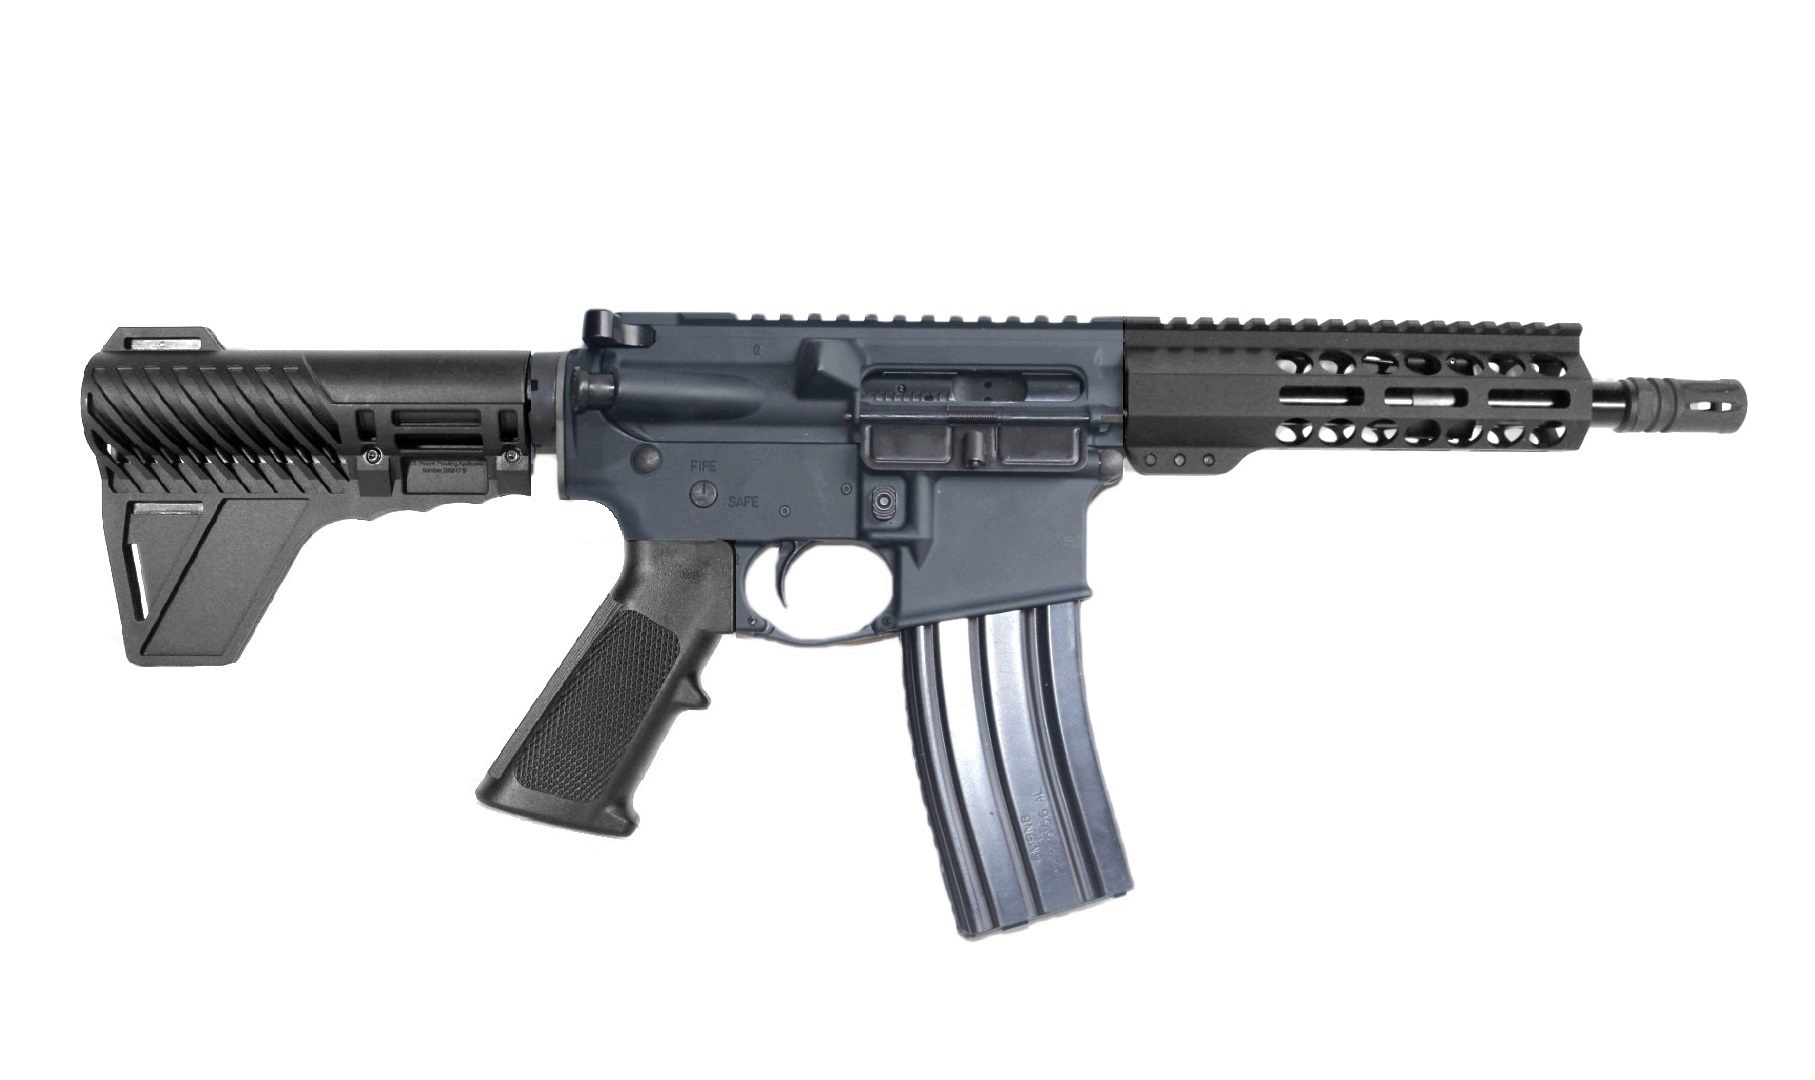 8 inch 5.56 NATO AR Pistol Two Tone FDE/BLK